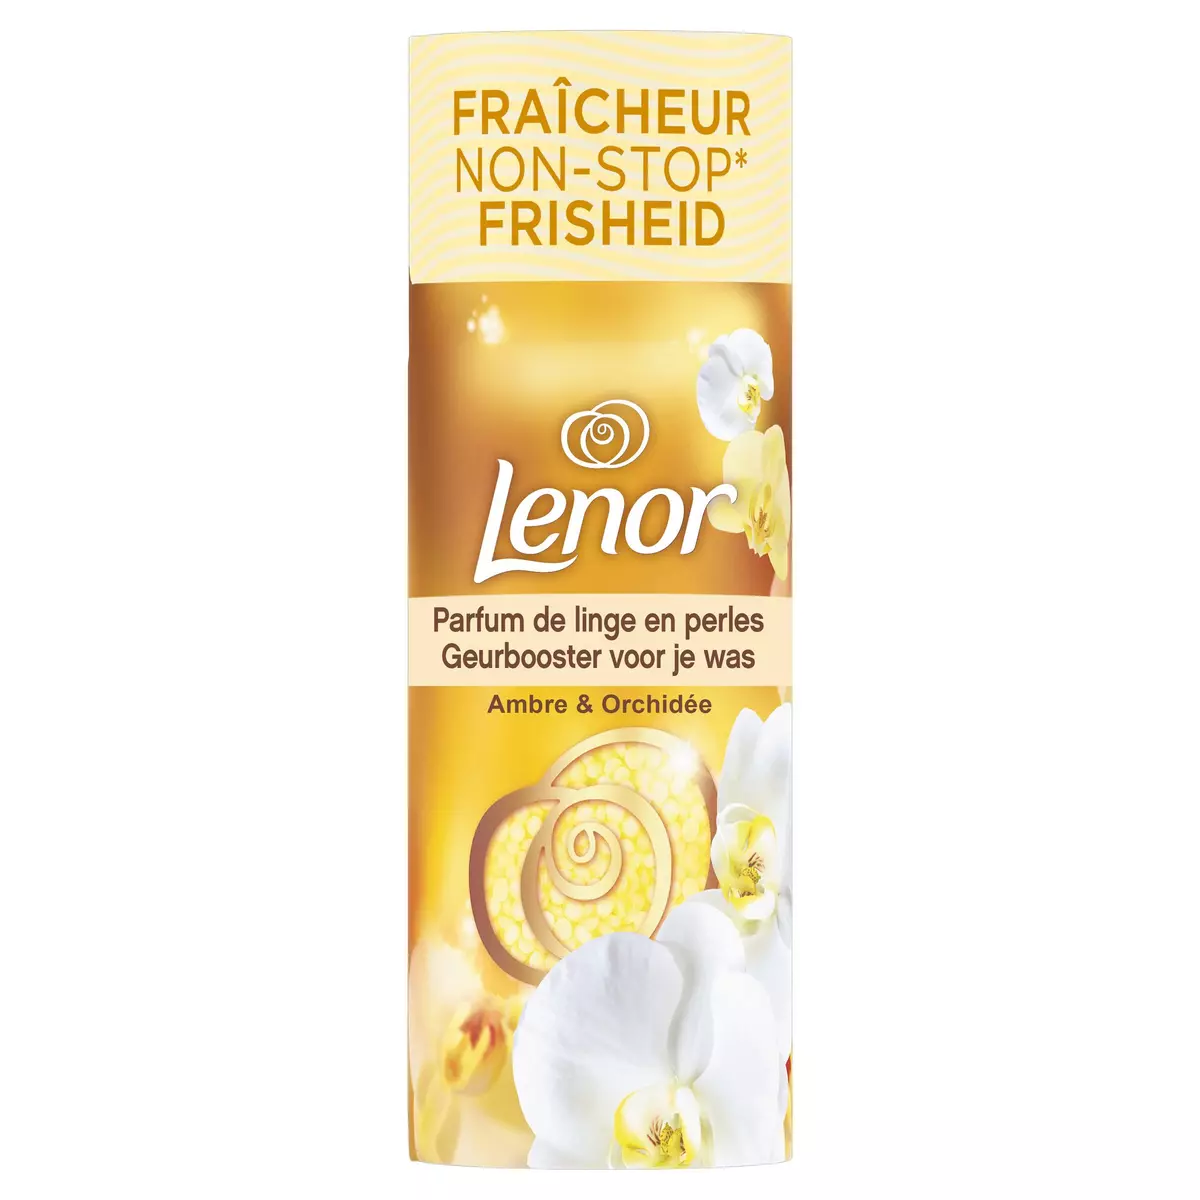 LENOR Parfum de linge en perles ambre & orchidée 235g